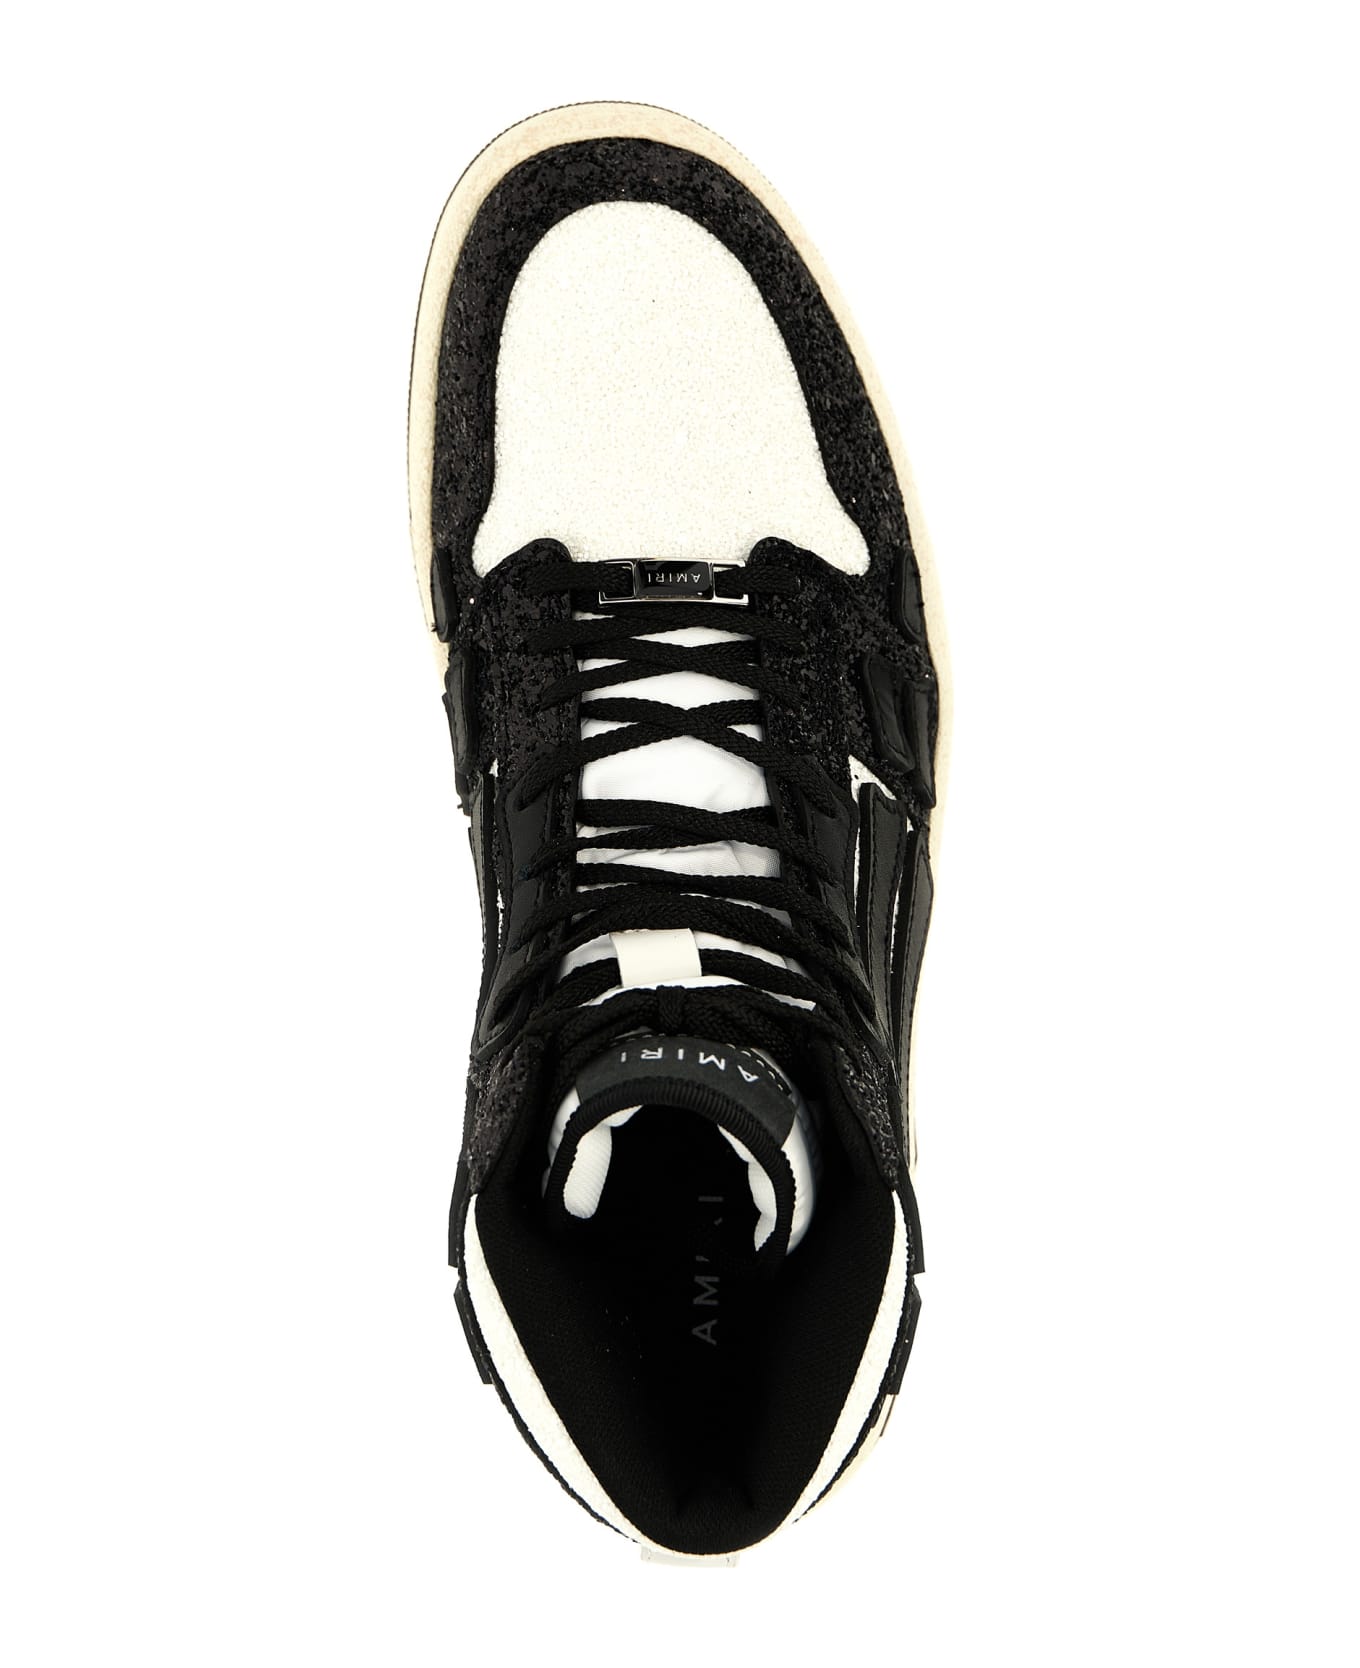 AMIRI 'glittered Skel' Sneakers - White/Black スニーカー